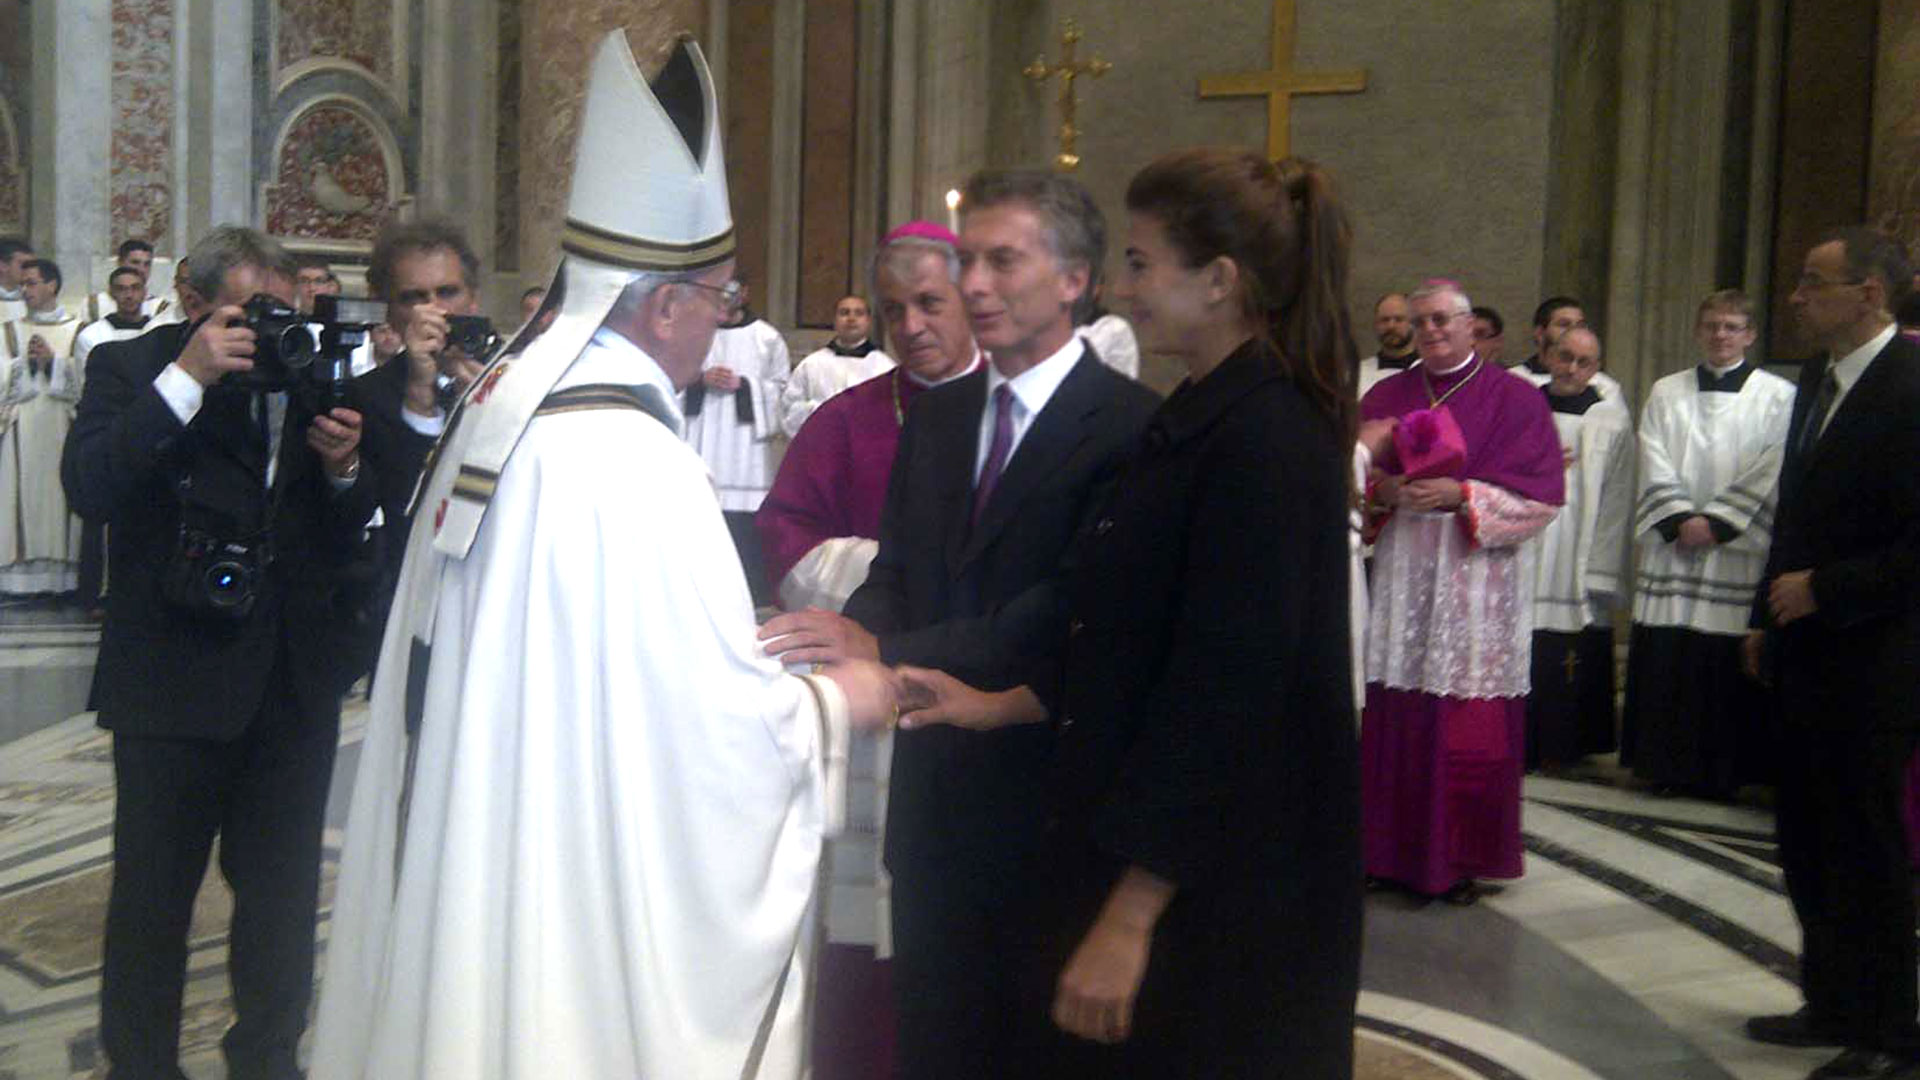 El saludo de Mauricio Macri, jefe de gobierno porteño en ese entonces, y su esposa, Juliana Awada, lo saludaron el día del inicio del pontificado 

